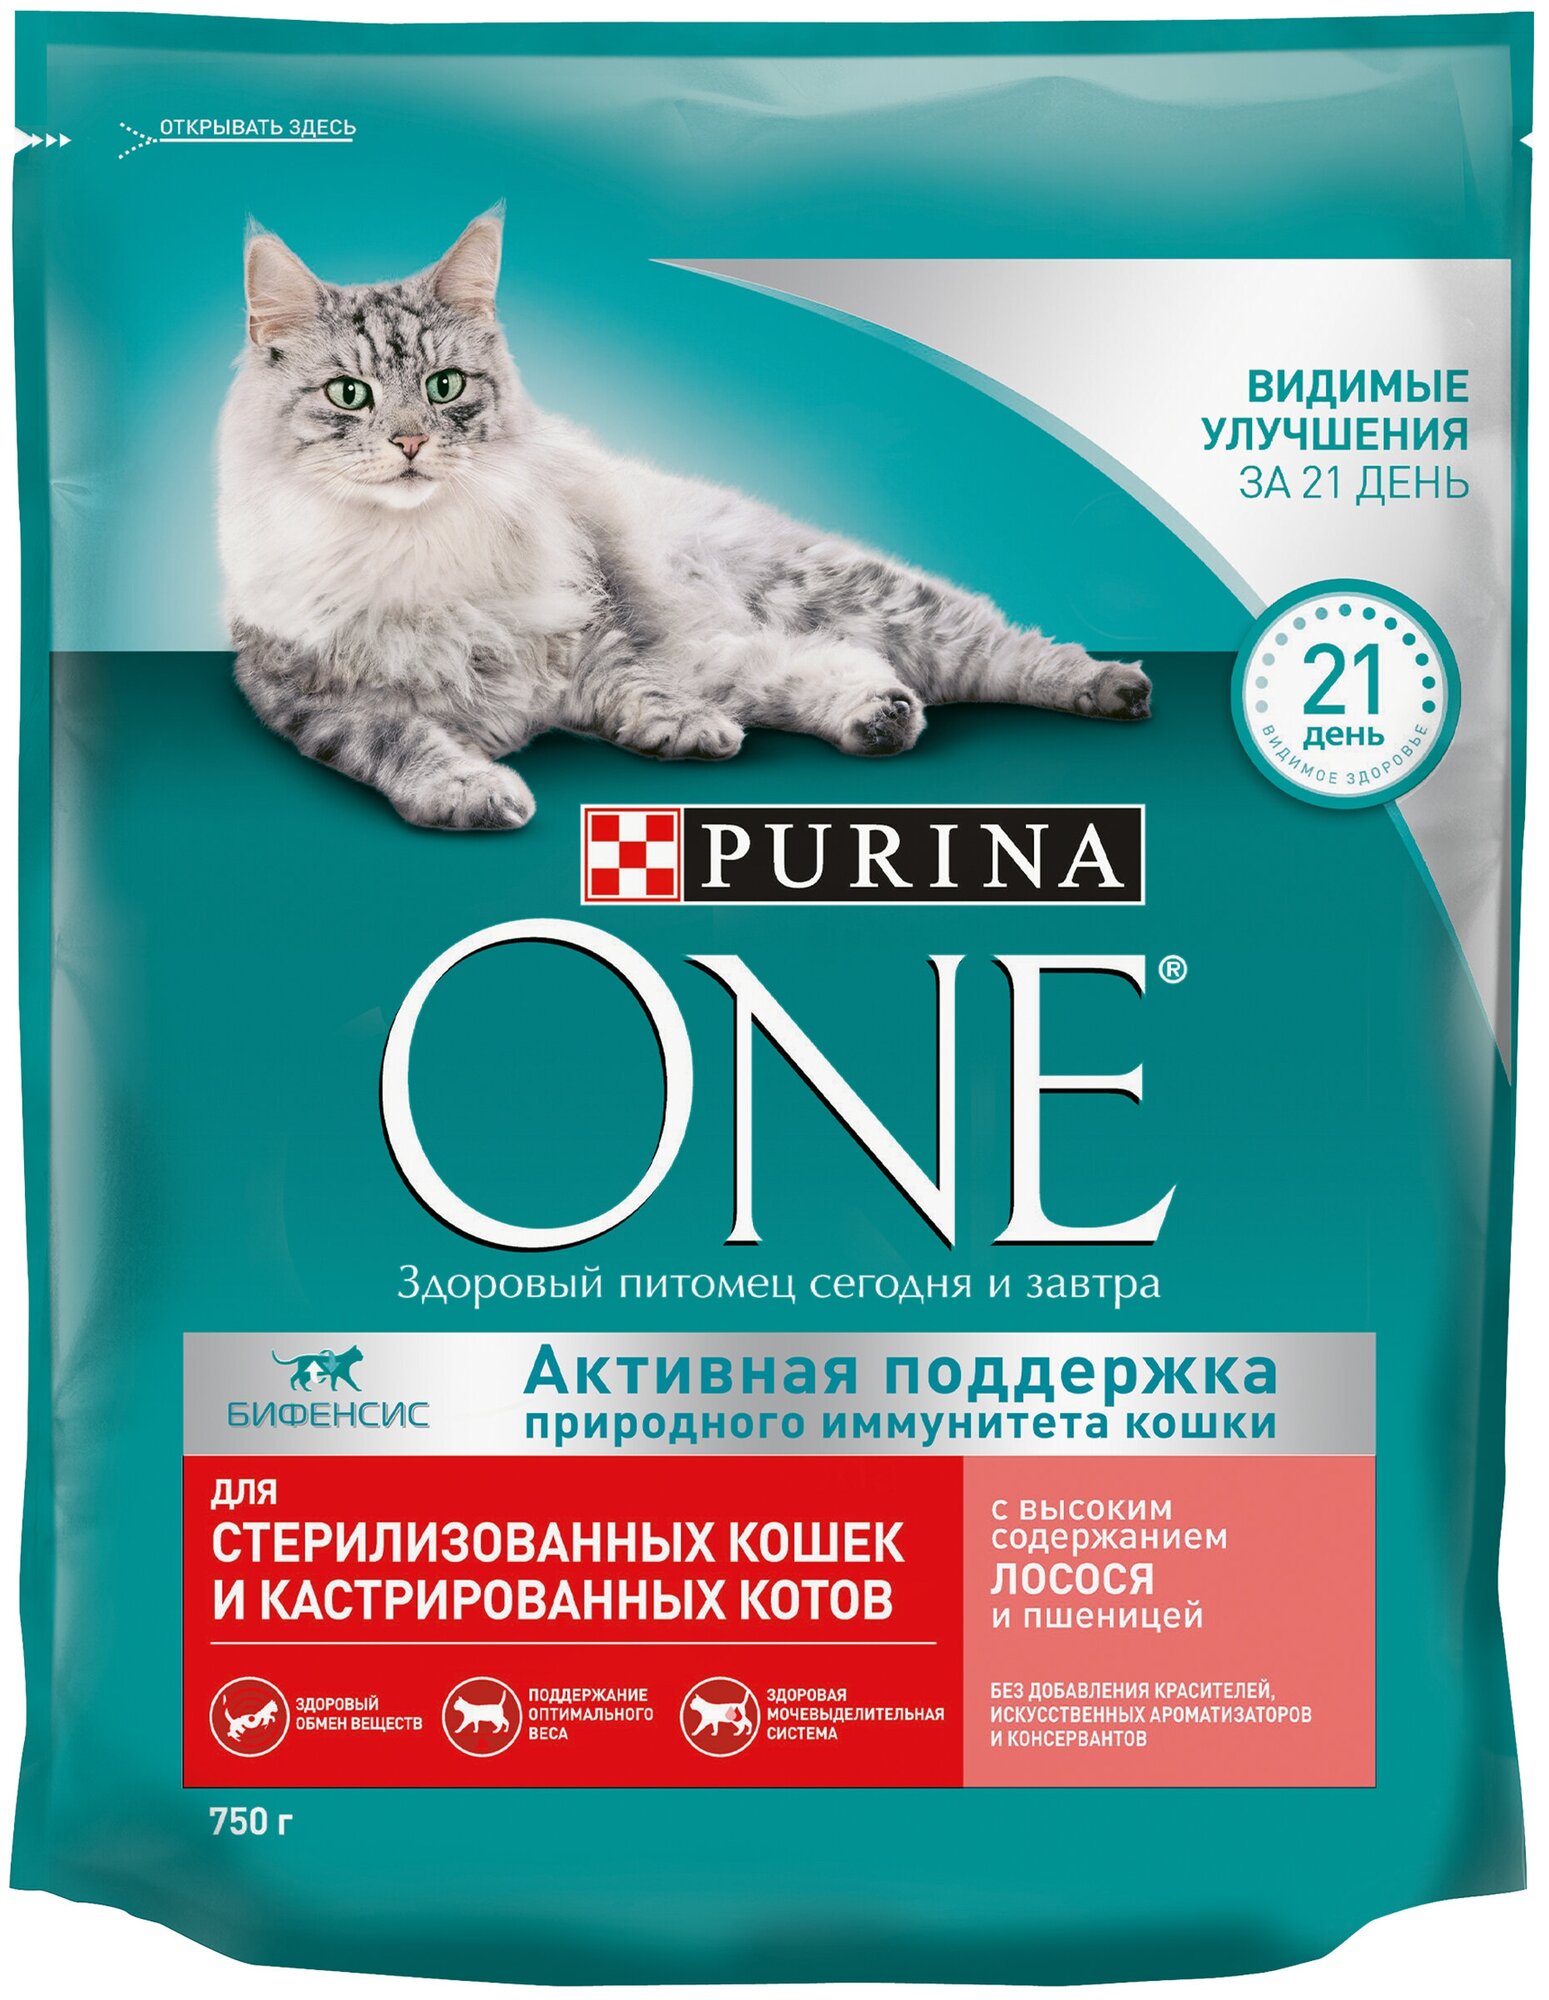 Сухой корм Purina ONE для стерилизованных кошек и кастрированных котов, с высоким содержанием лосося и пшеницей, 750 г